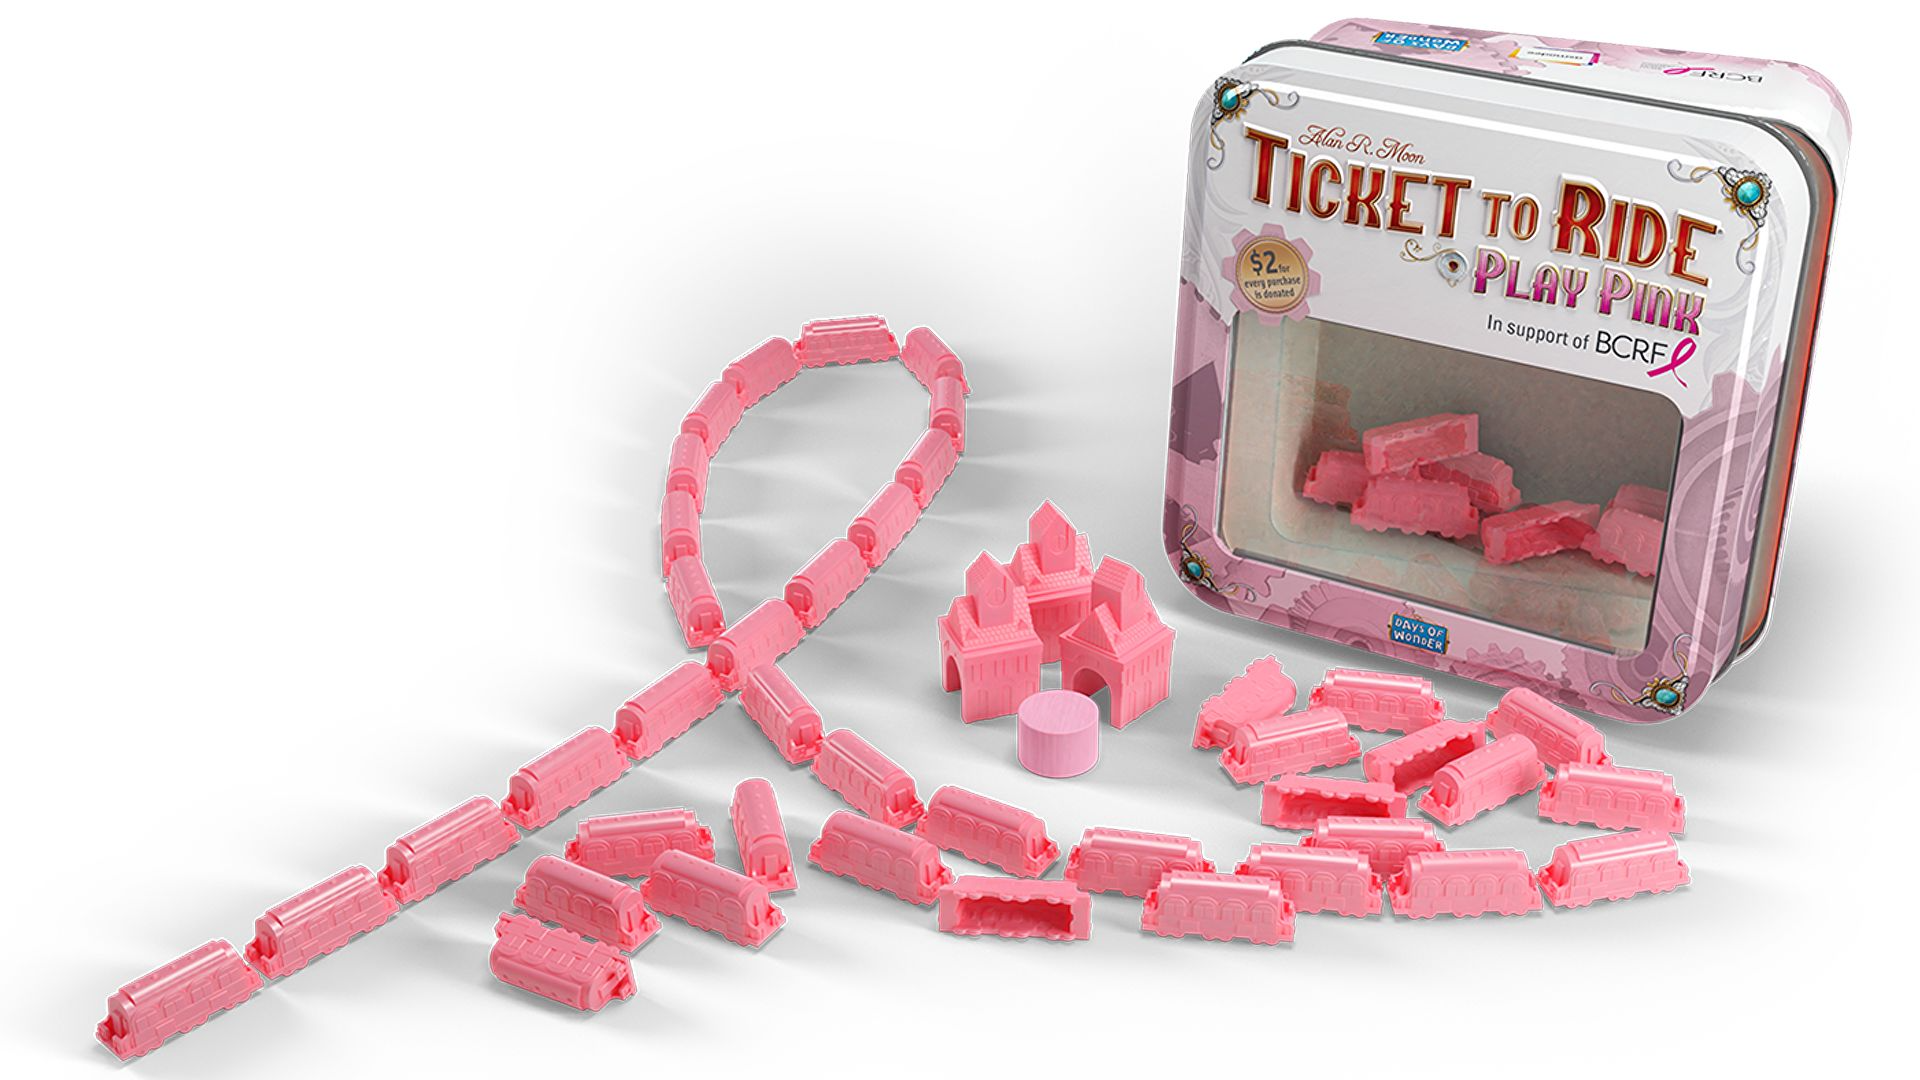 Joc de societate cu piese roz, creat pentru a atrage atenția asupra cancerului mamar